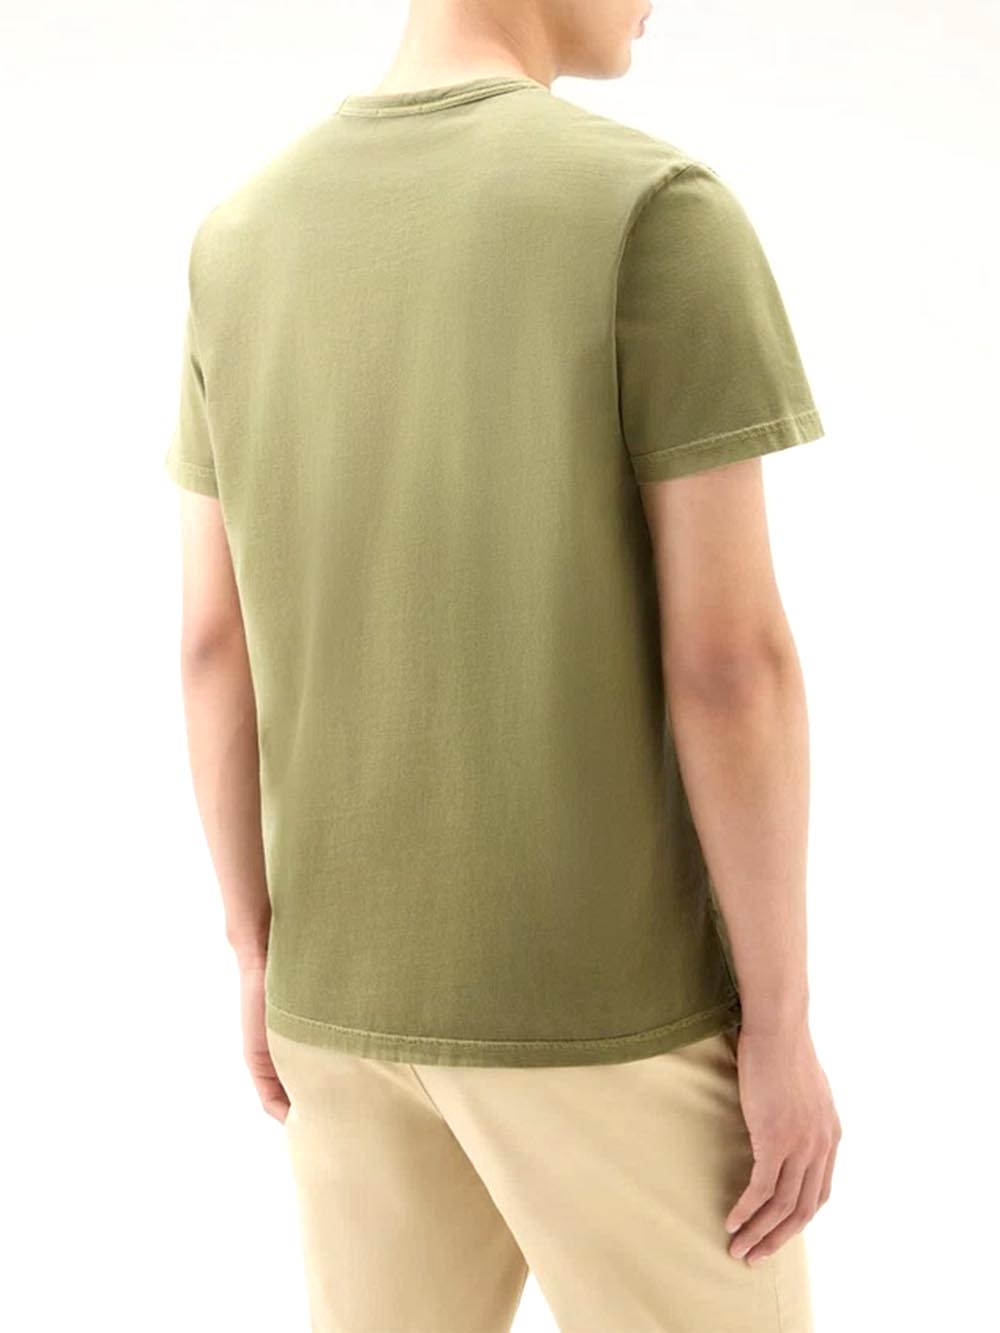 Woolrich T-shirt Uomo Cfwote0126mrut3709 Verde militare